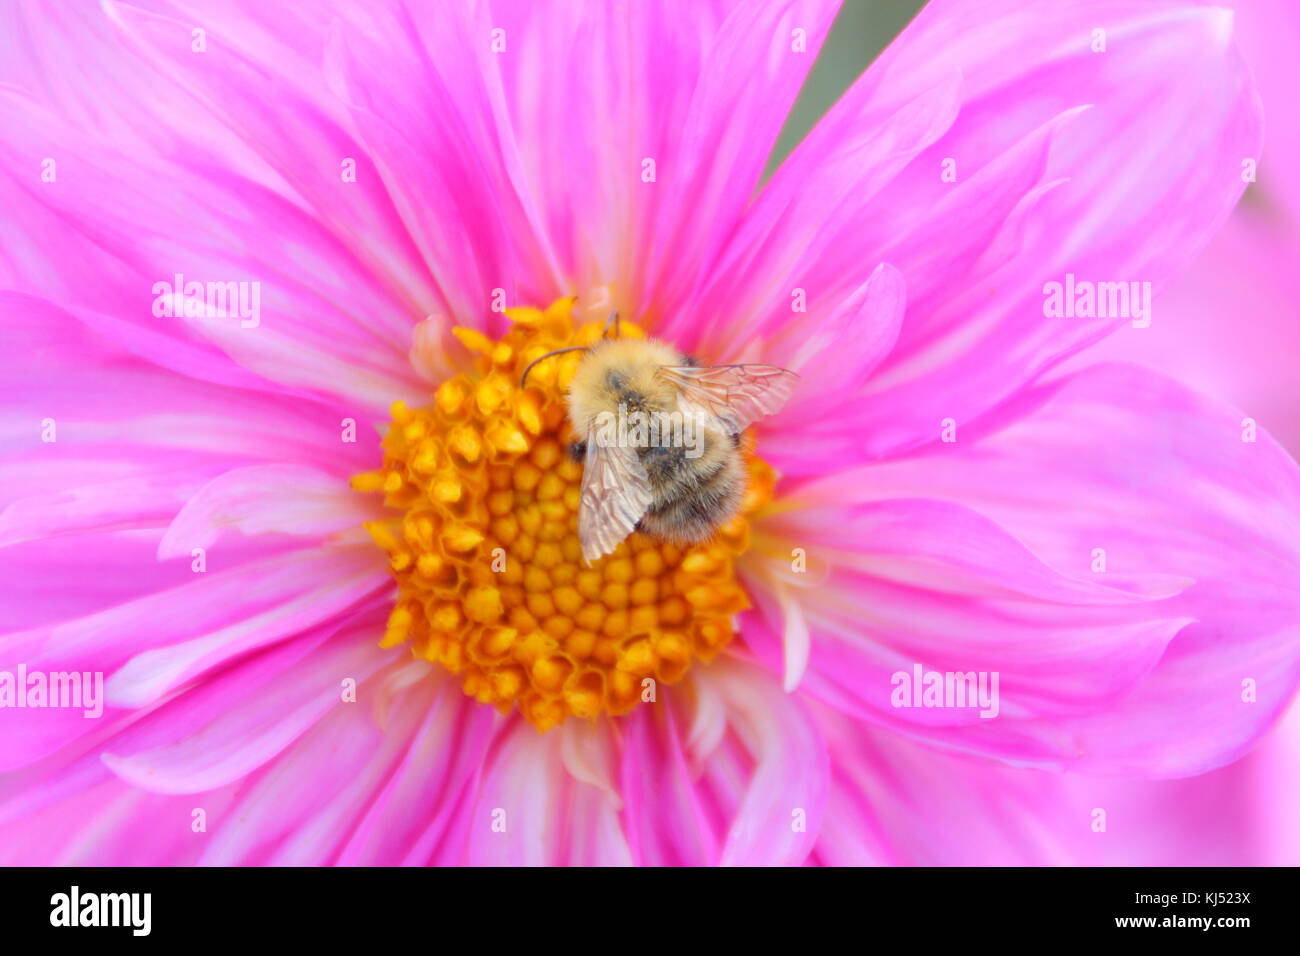 Carde commun (Bombus pascuorum) abeille pollinisant 'Duddon Catherine', s'épanouir à la fin de l'été, Leeds, Angleterre, RU Banque D'Images